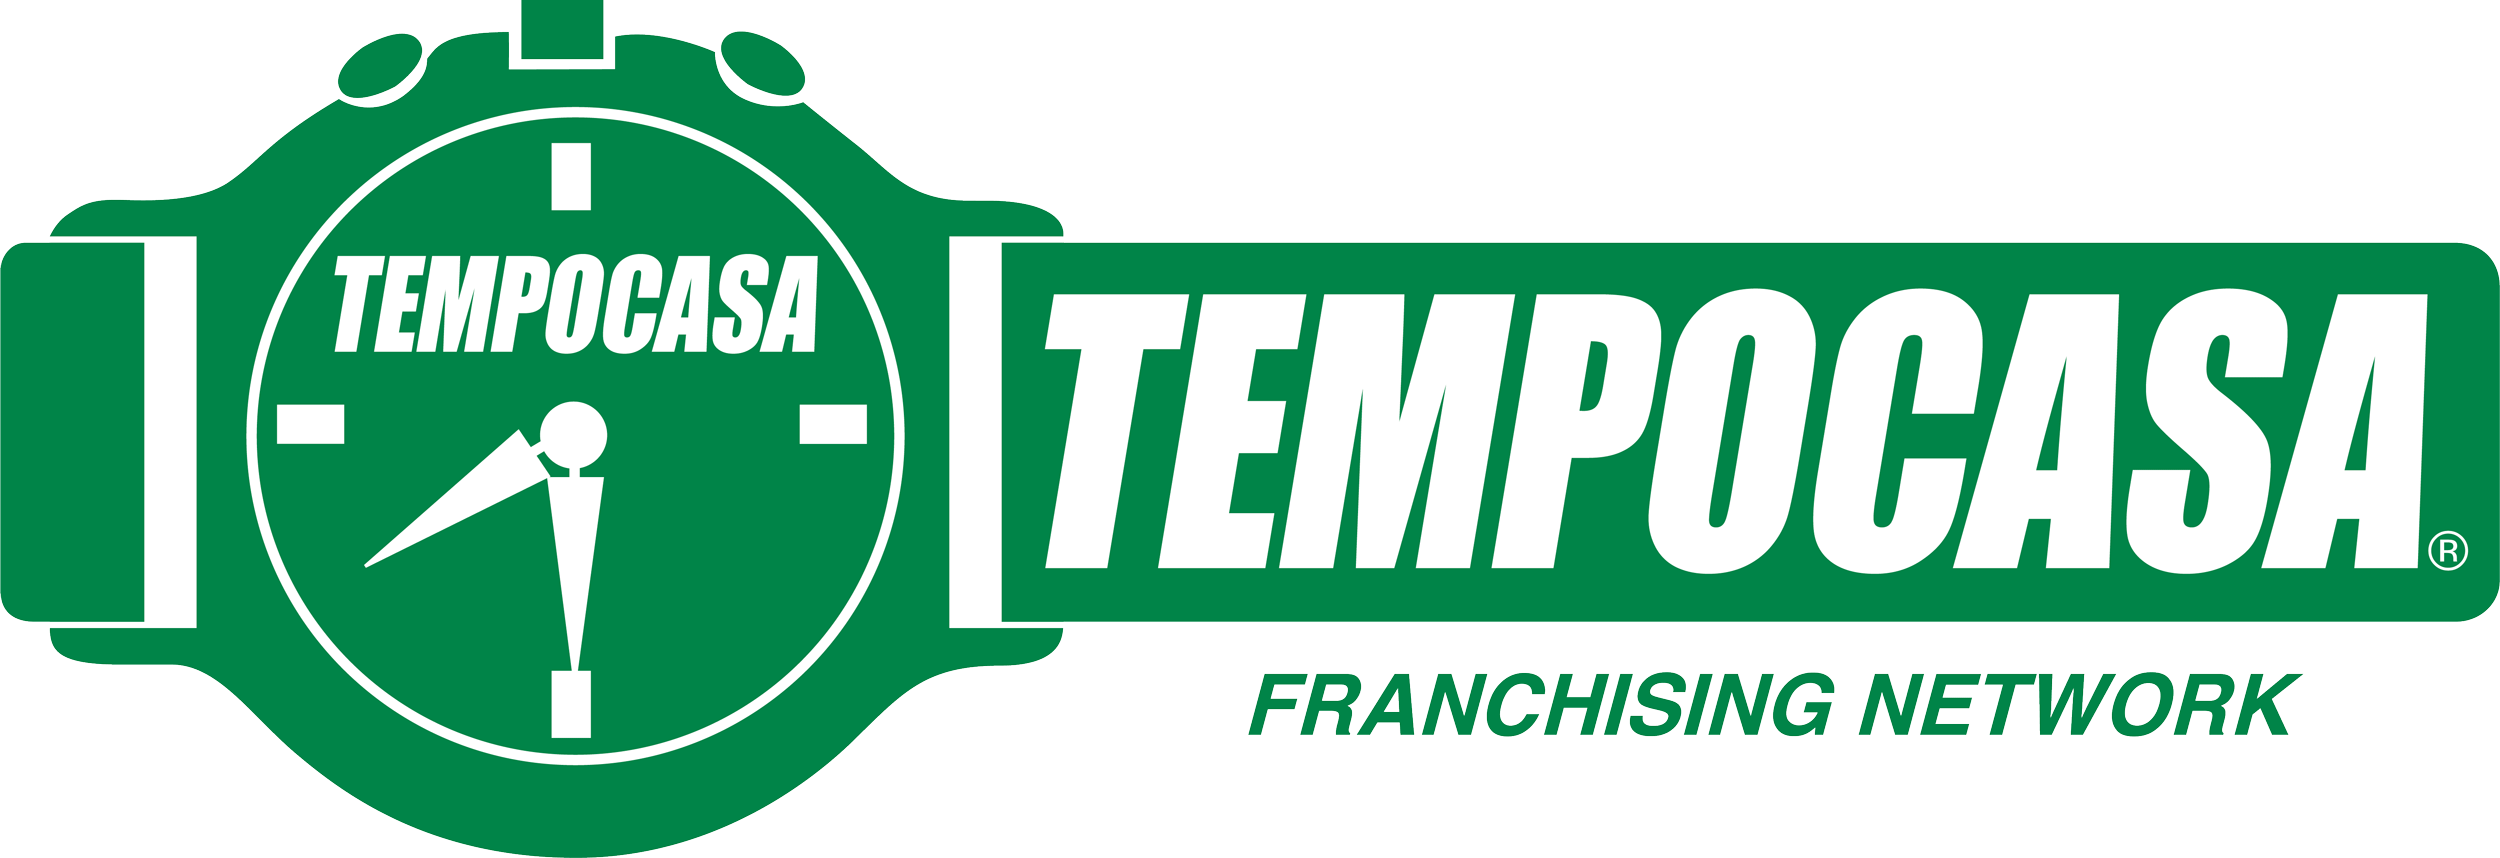 Tempocasa Tempoaffitti  milano/maciachini - Tempocasa